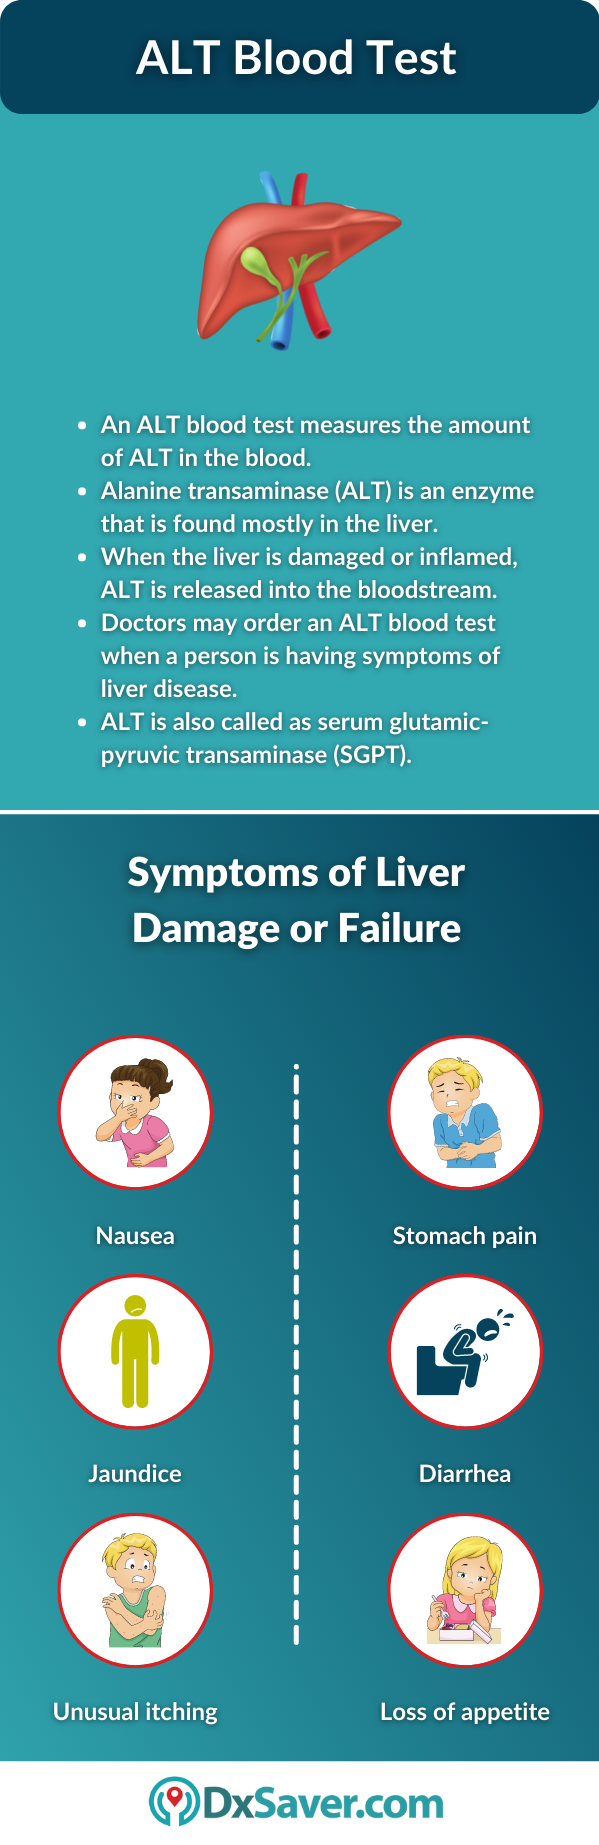 ALT Blood Test and Symptoms of Liver Damage 